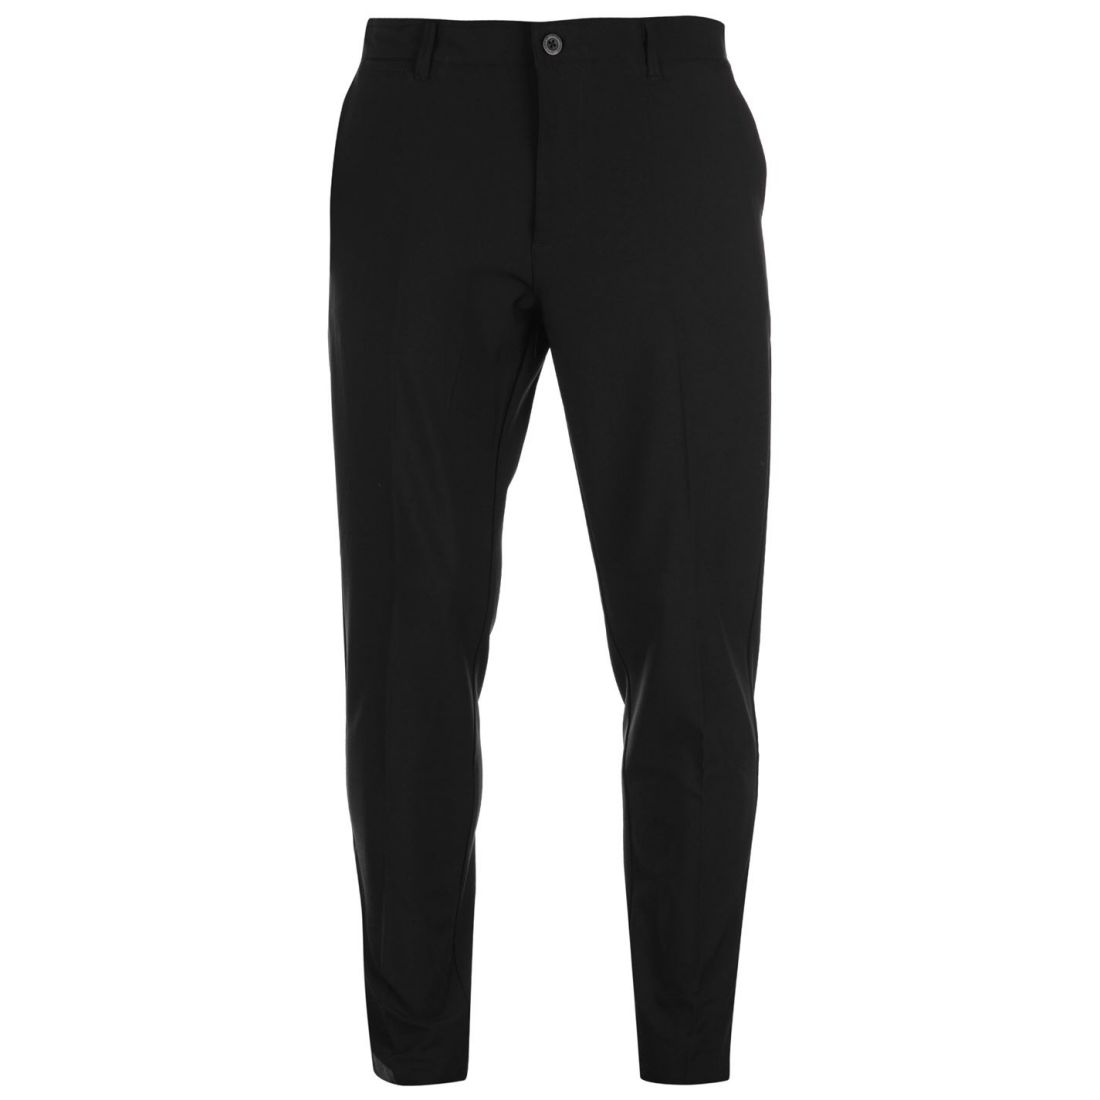 Slazenger Mens Perf Golf Trs Trousers Pants Bottoms | eBay